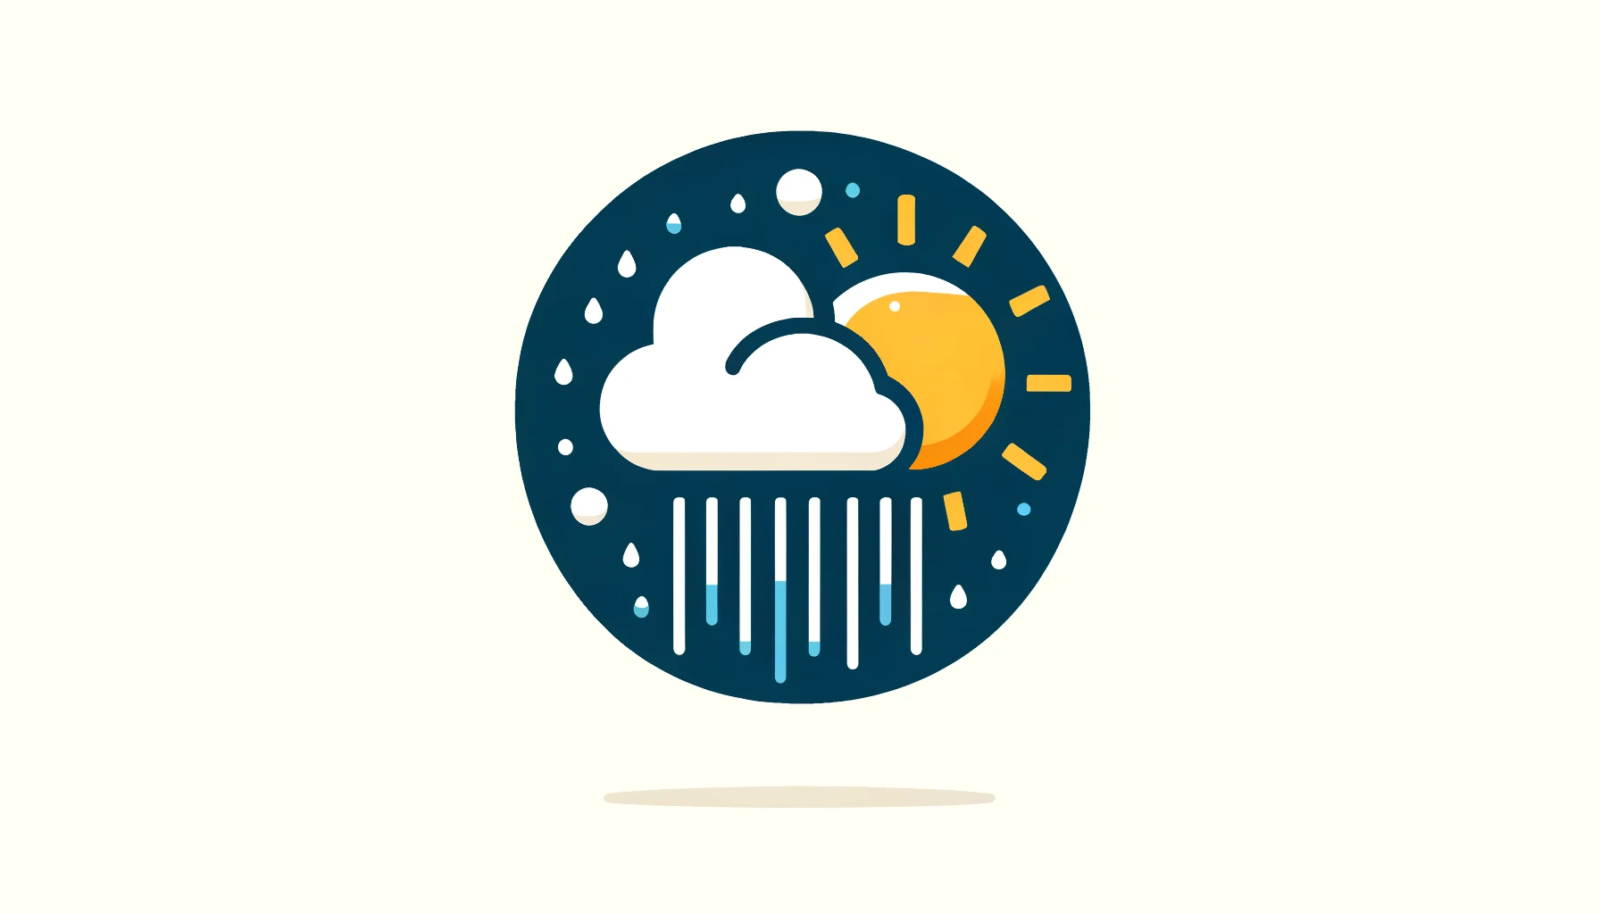 Simbolo di un meteo variabile con nuvole, pioggia leggera e sole